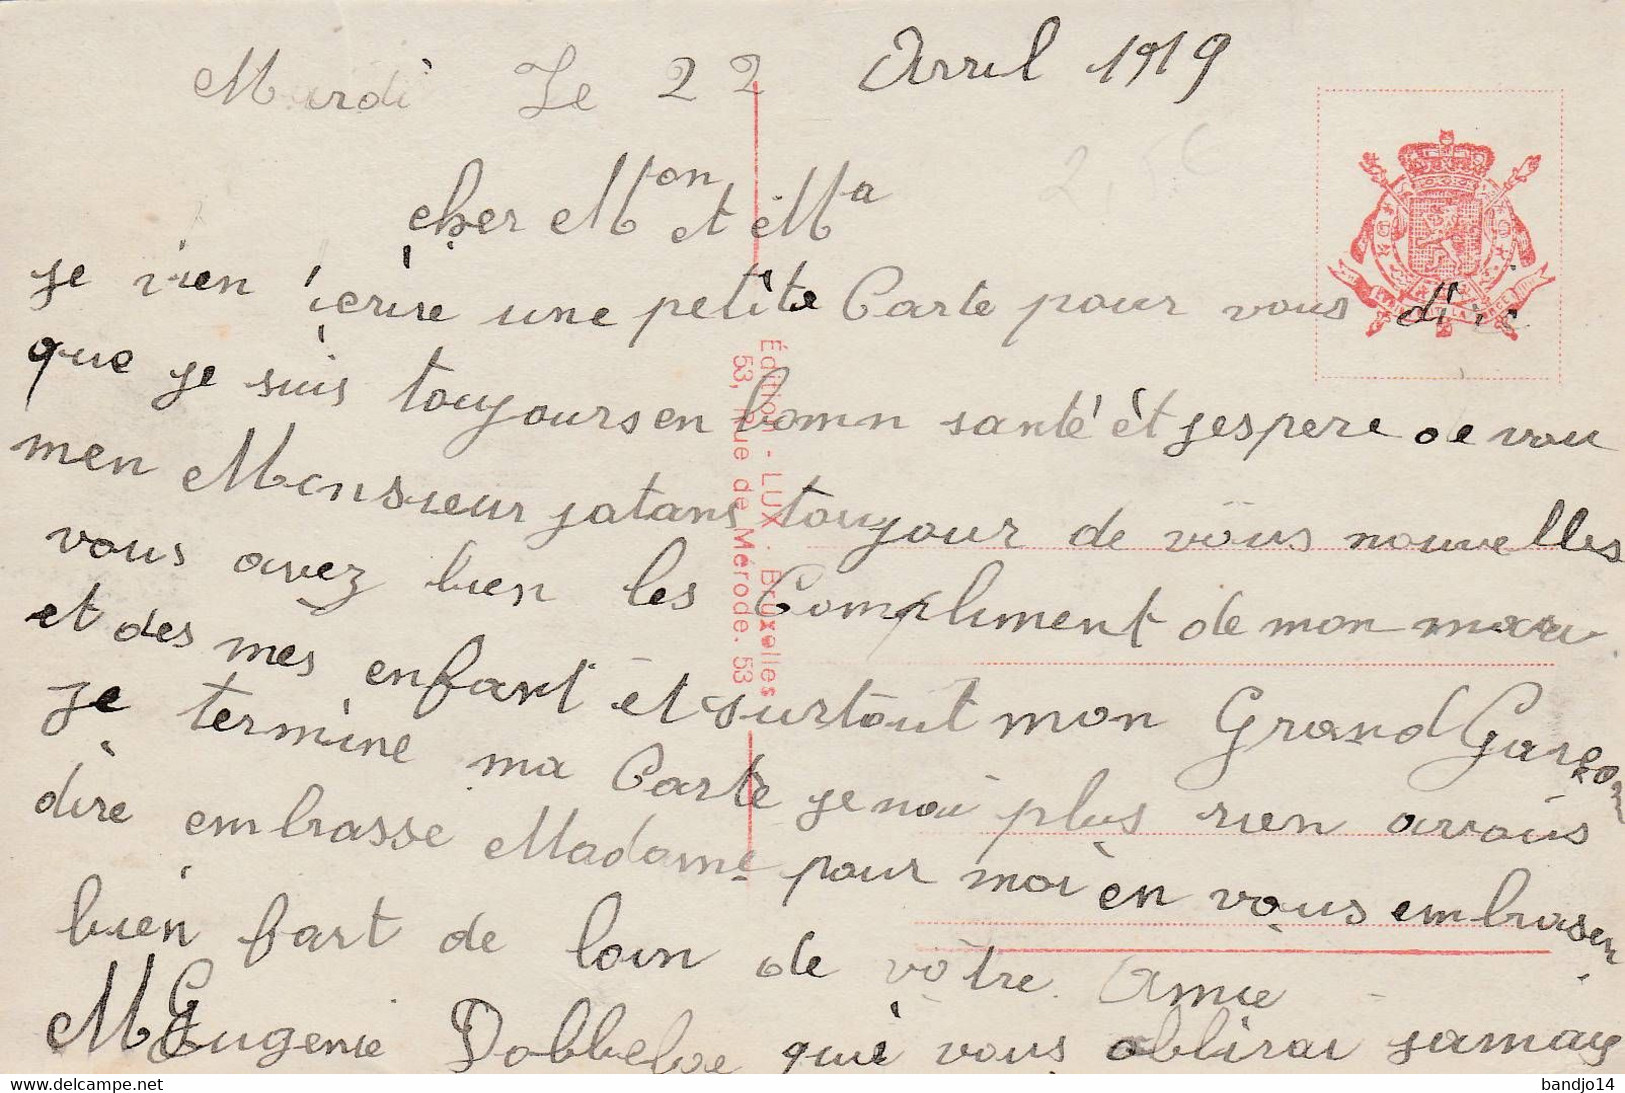 1918 - Entrée De La Famille Royale Et Des Troupes Alliées Le 22 Novembre    - Scan Recto-verso - Fêtes, événements